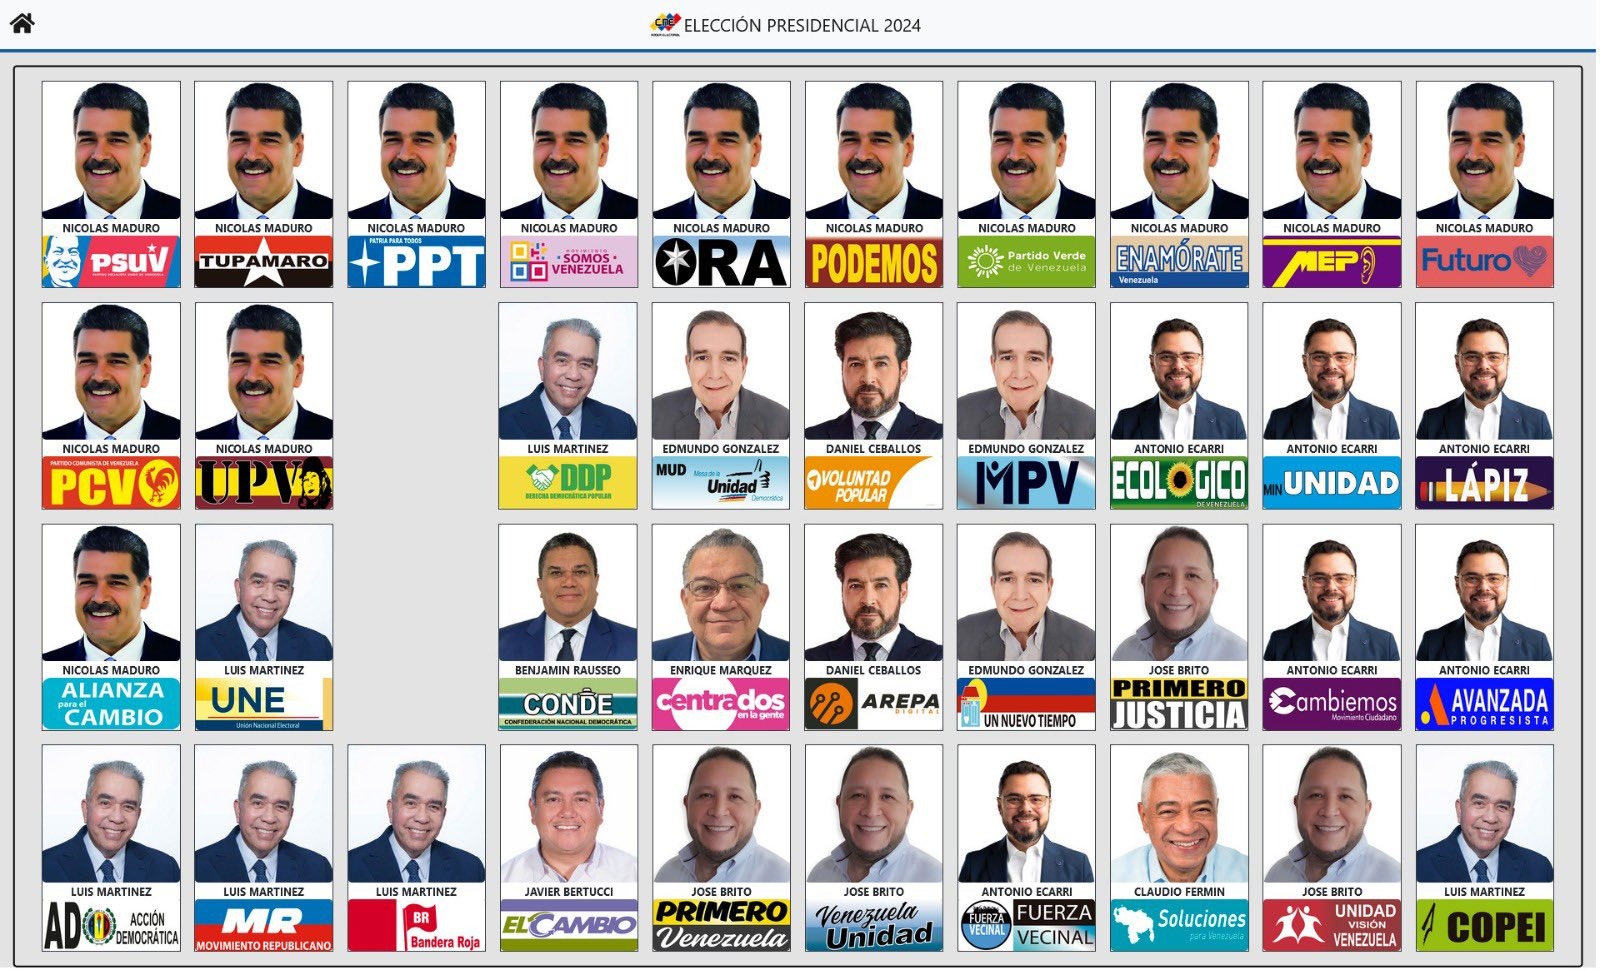 Presentan nuevo tarjetón electoral para presidenciales - Agencia Carabobeña de Noticias